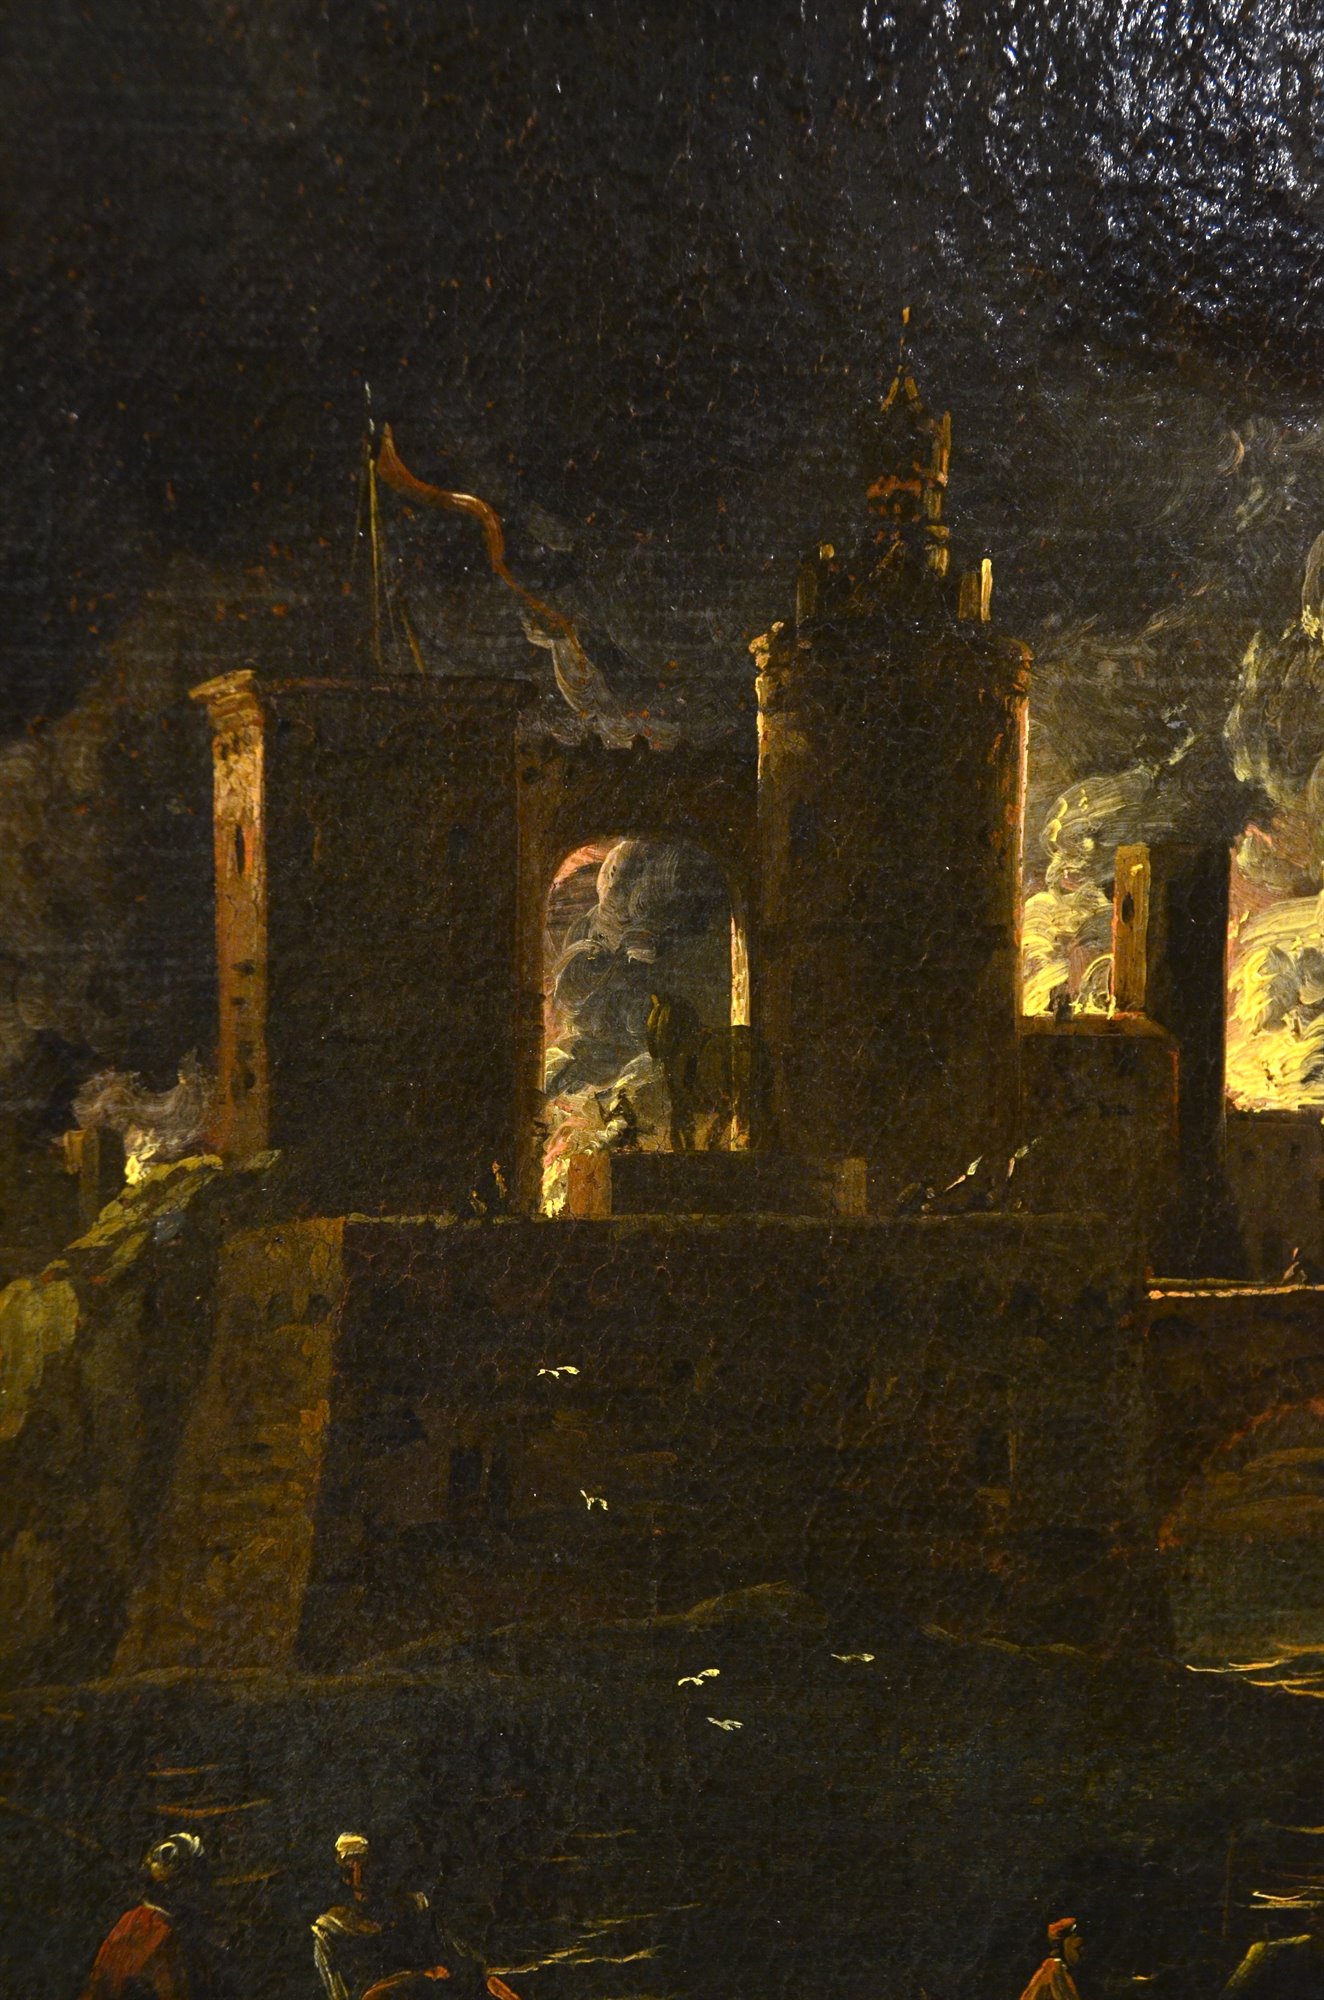 Paesaggio notturno con l'incendio di Troia